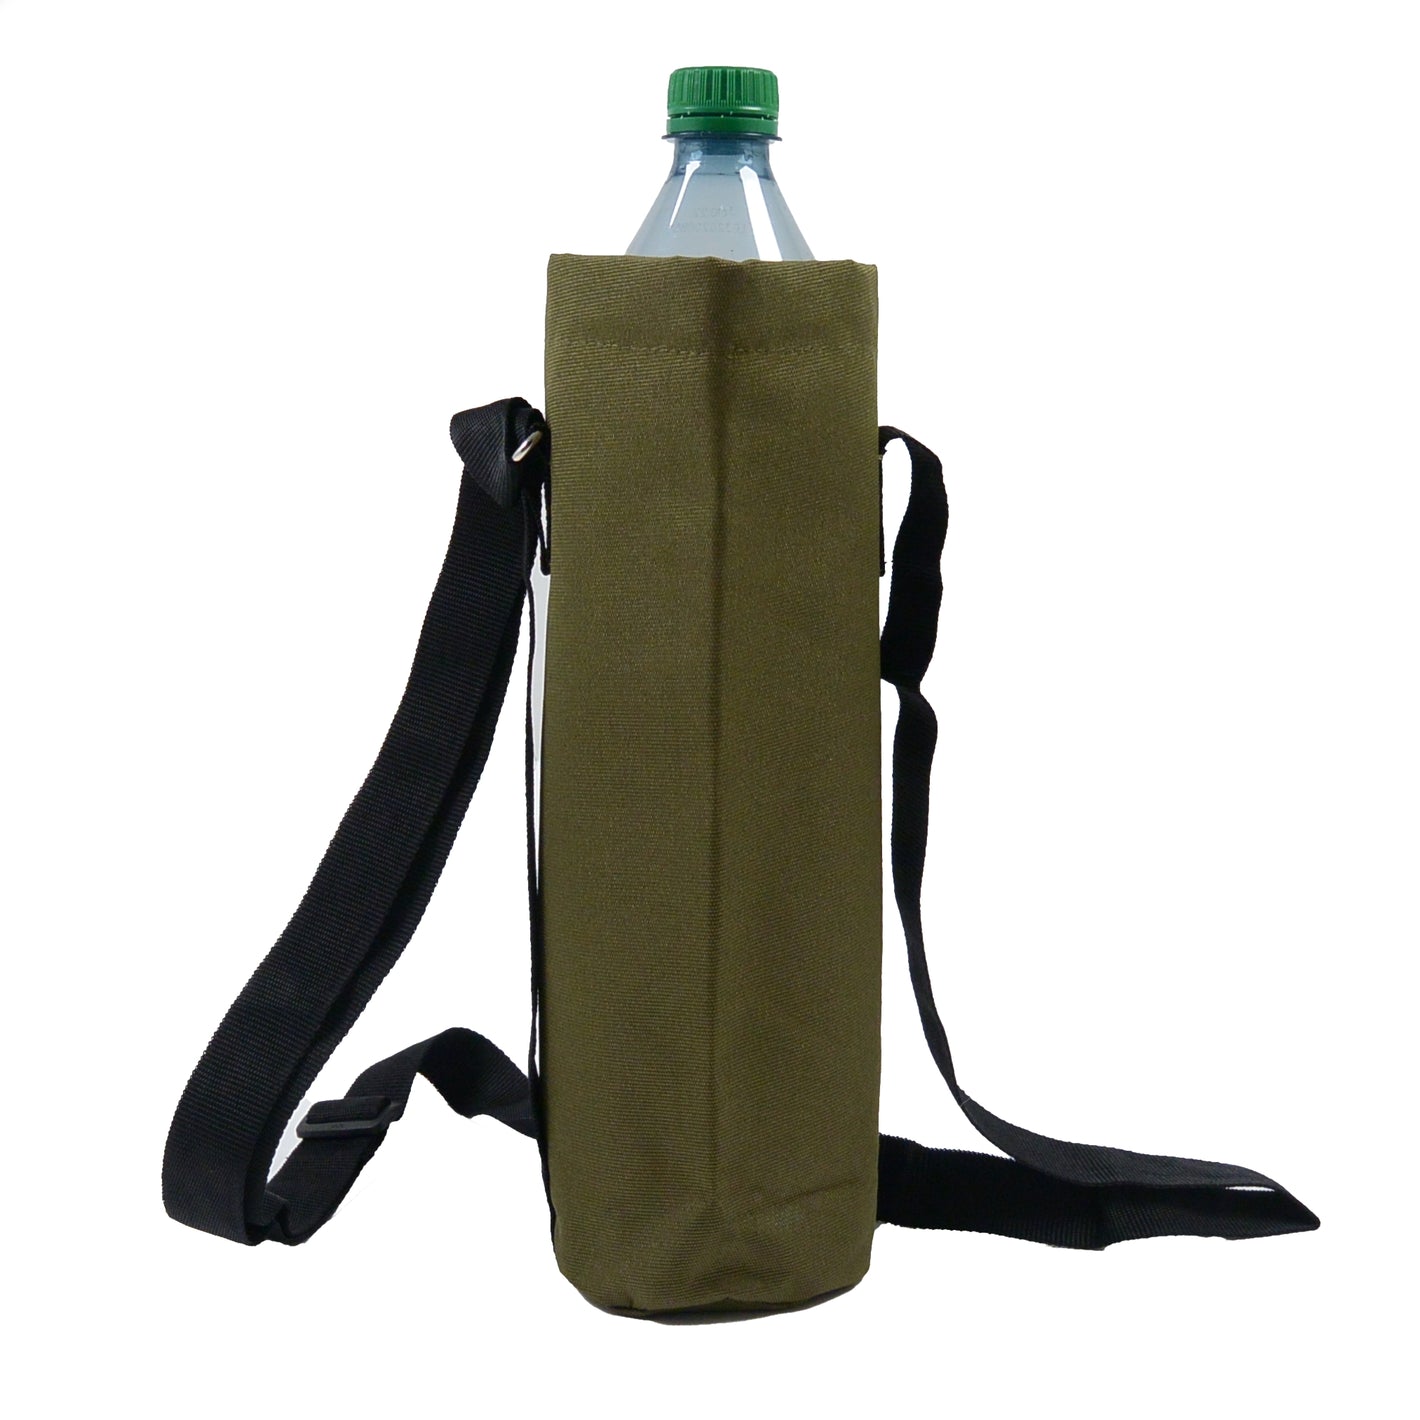 Flaschen Tasche Wasserabweisende (Nylon Khaki) für Wasserflaschen bis 1500 ml  - Nijens Shop